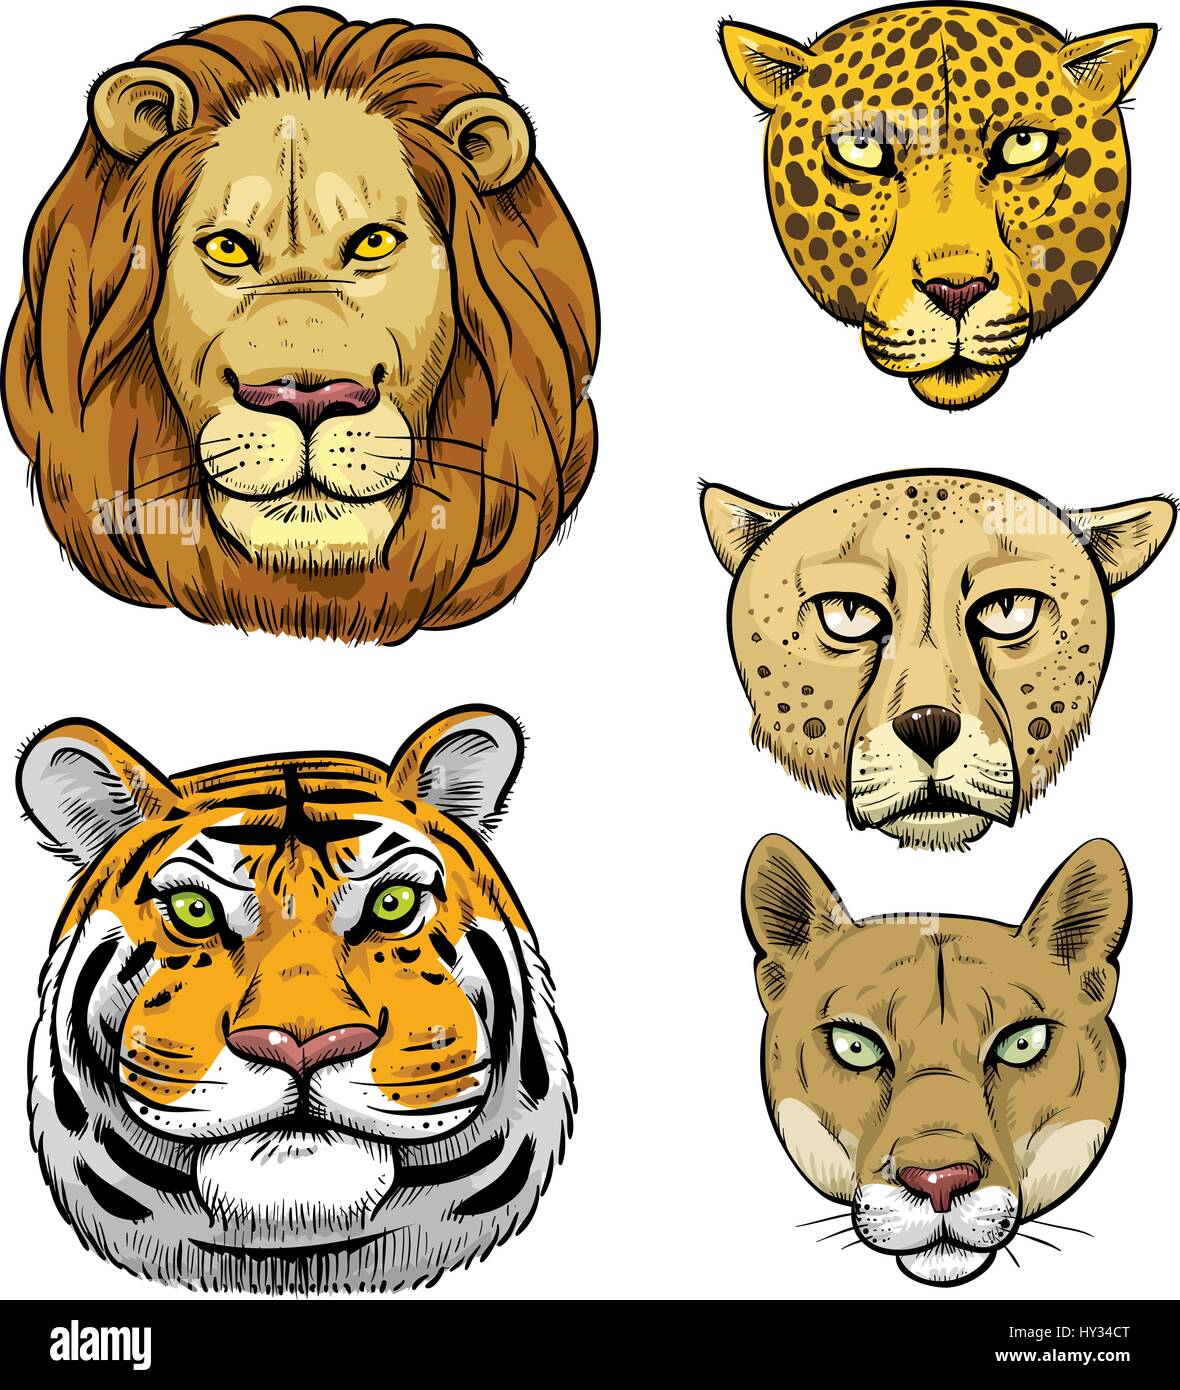 Cartoon Gesichter einiger der größten Raubkatzen: Löwe, Tiger, Gepard,  Leopard, Puma Stock-Vektorgrafik - Alamy